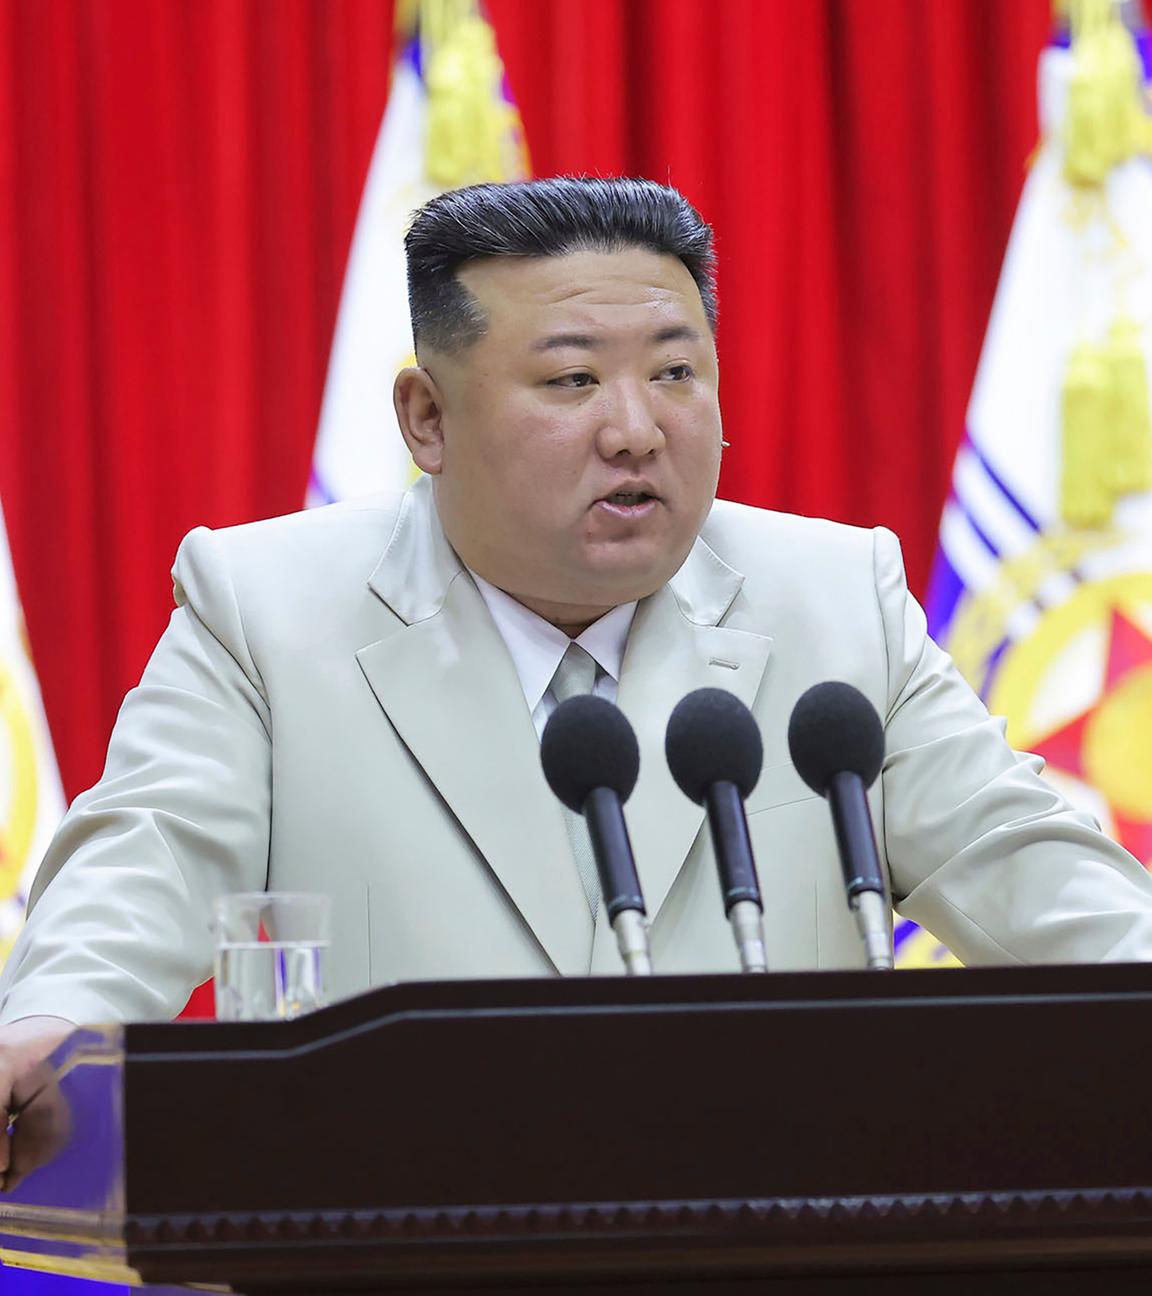 Kim Jong-un steht vor drei Mikrofonen im hellen Anzug.